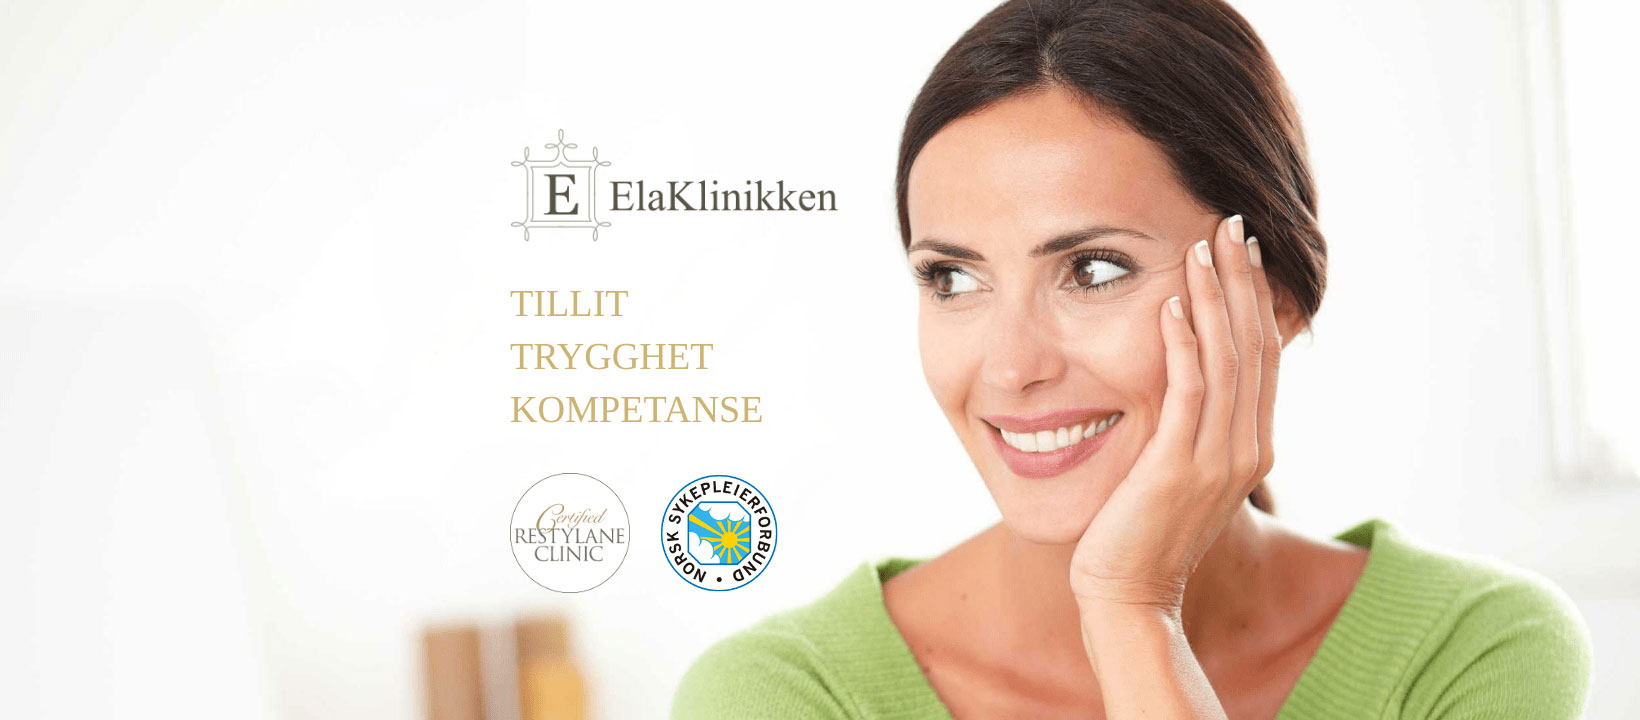 Featured image for “Ela Klinikken”